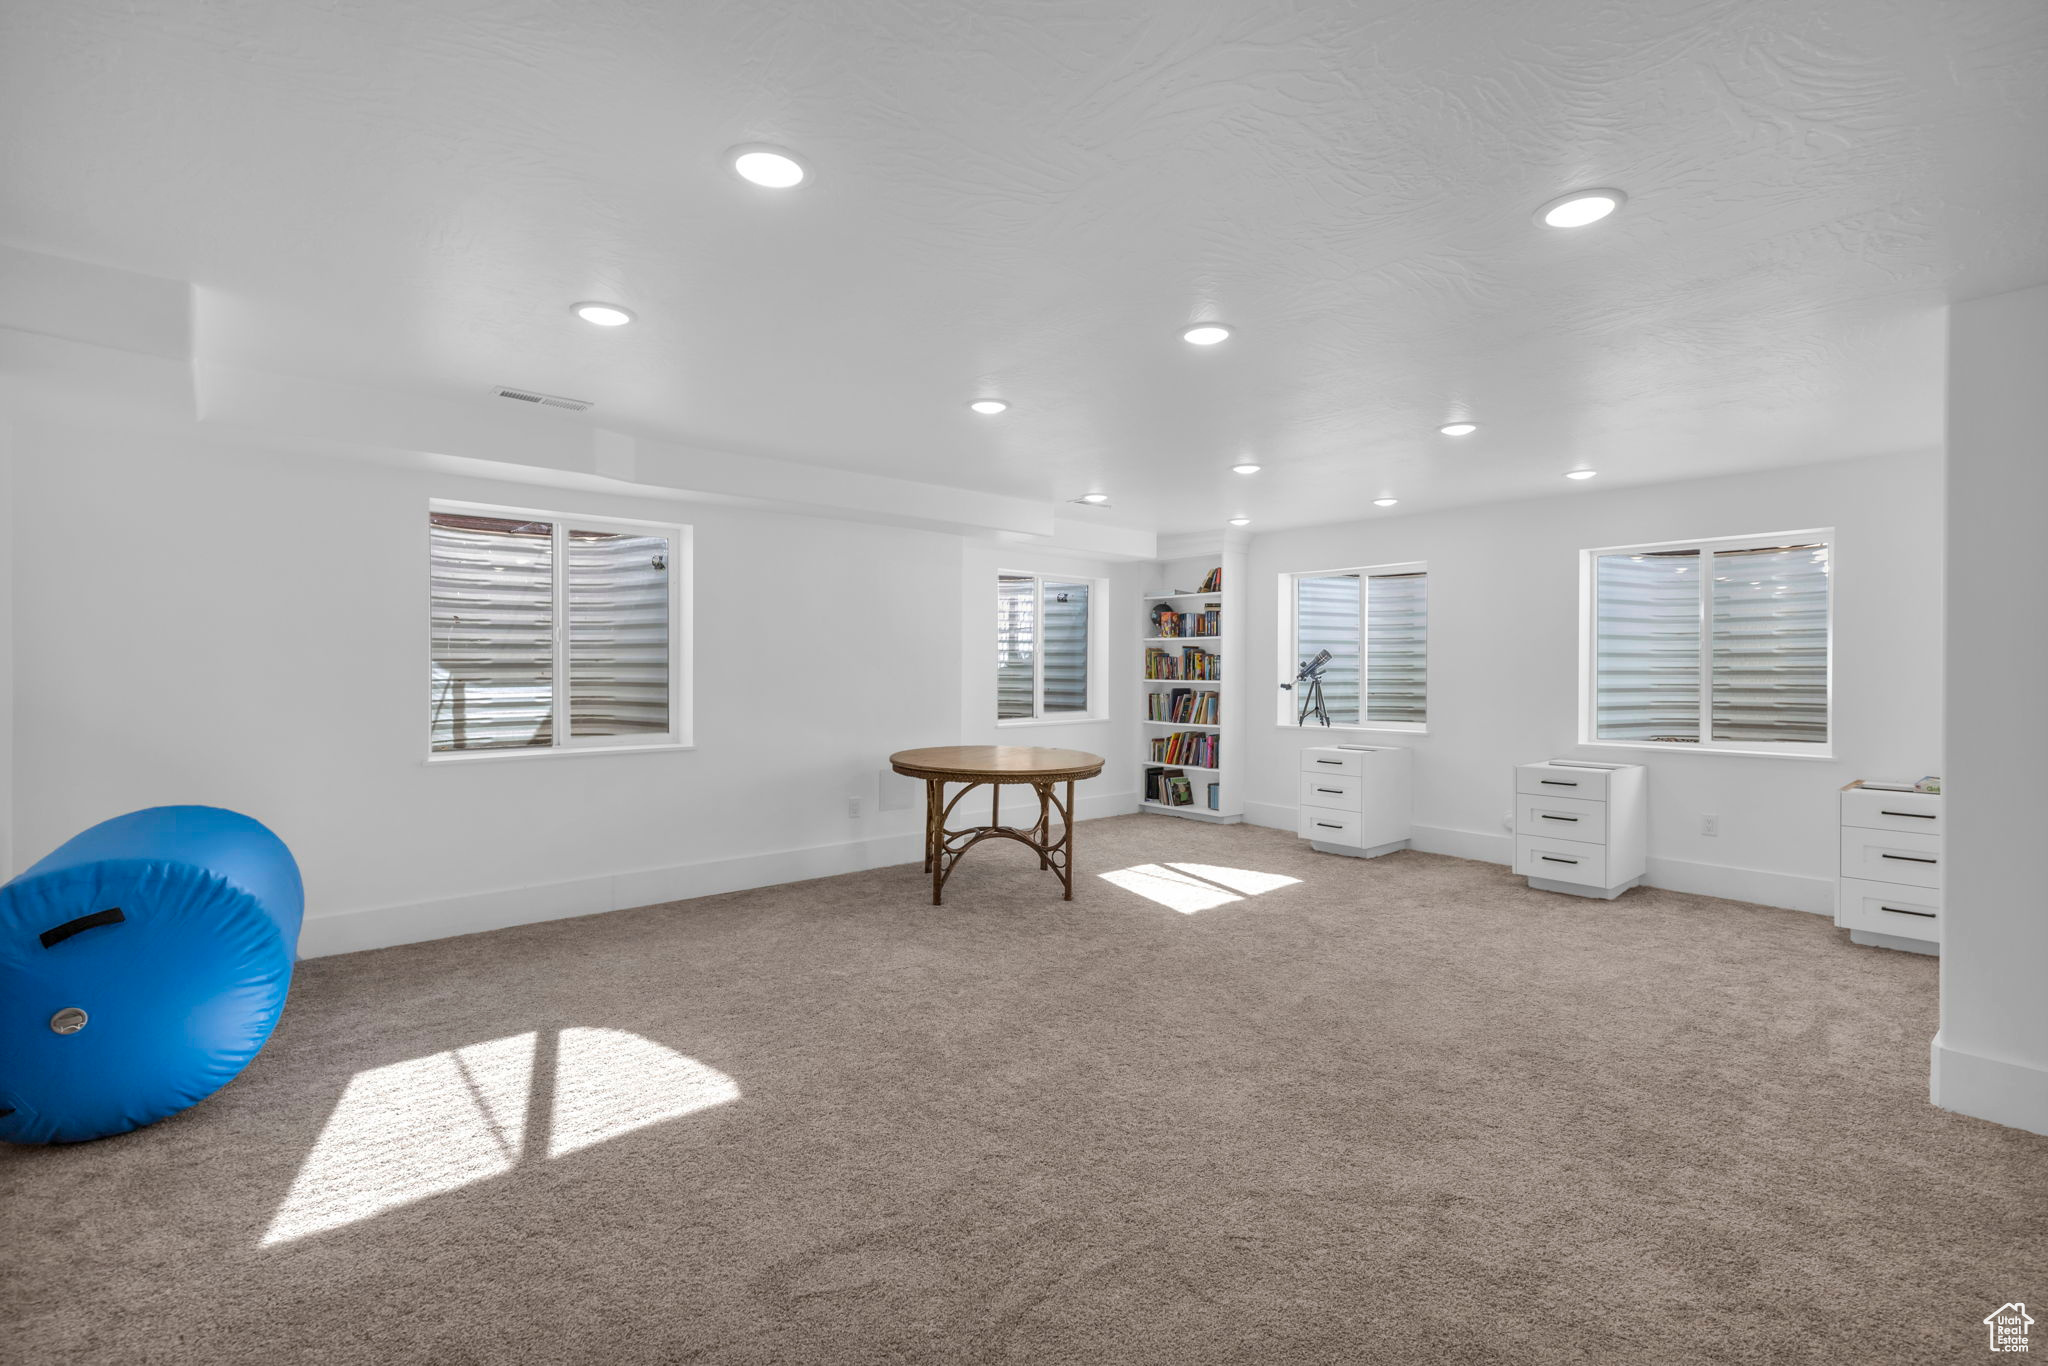 Interior space featuring light carpet